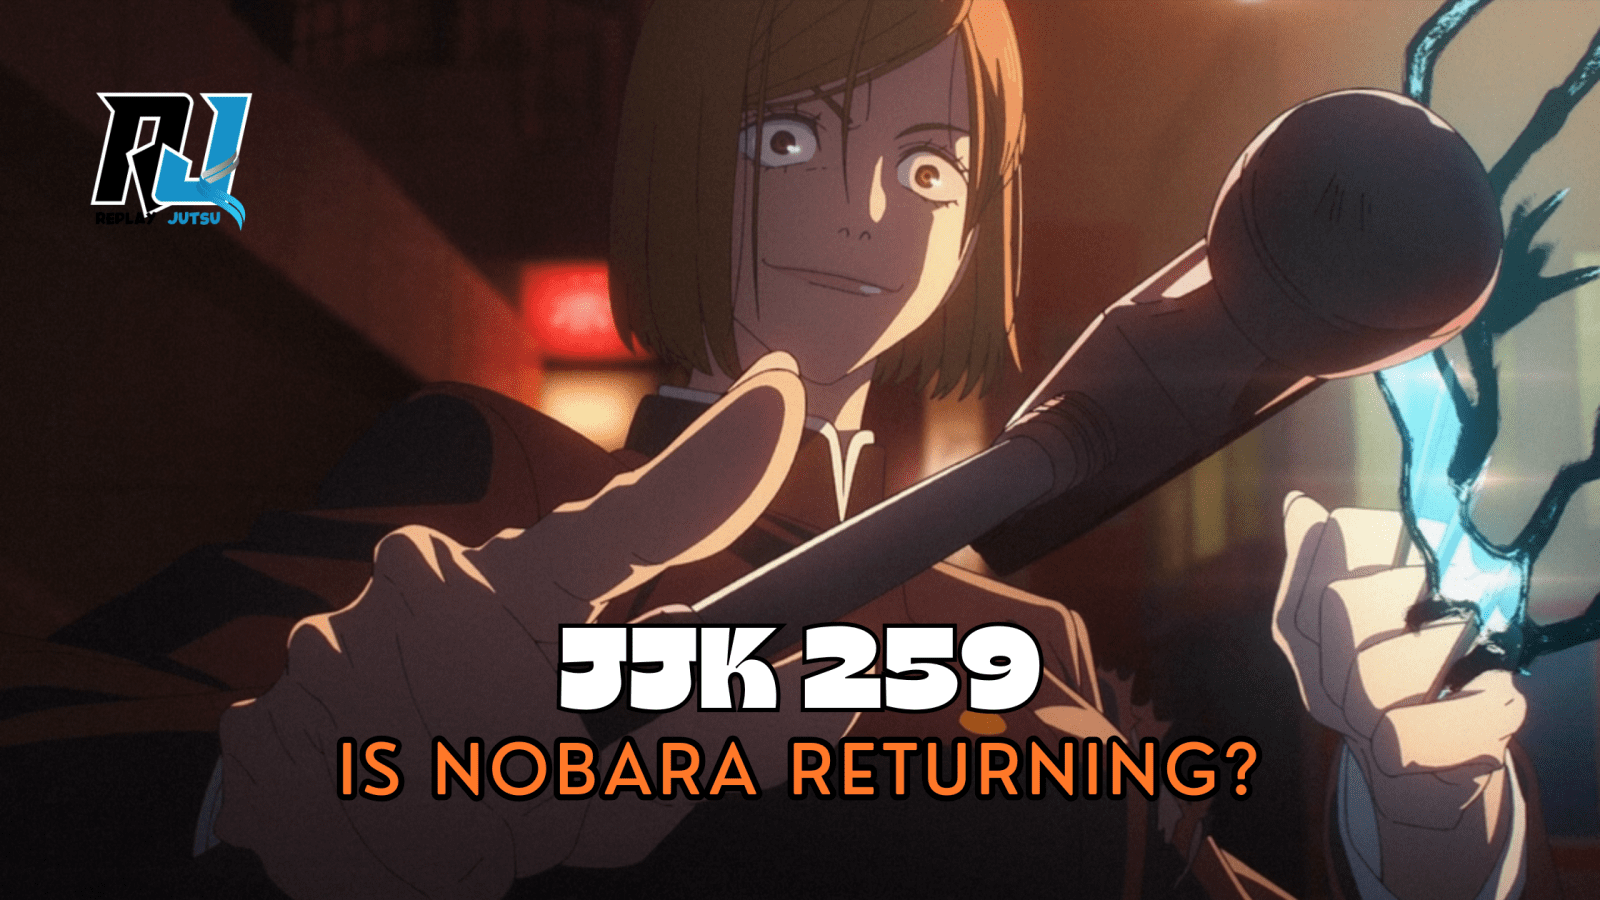 Did JJK 259 Confirm Nobara Return?